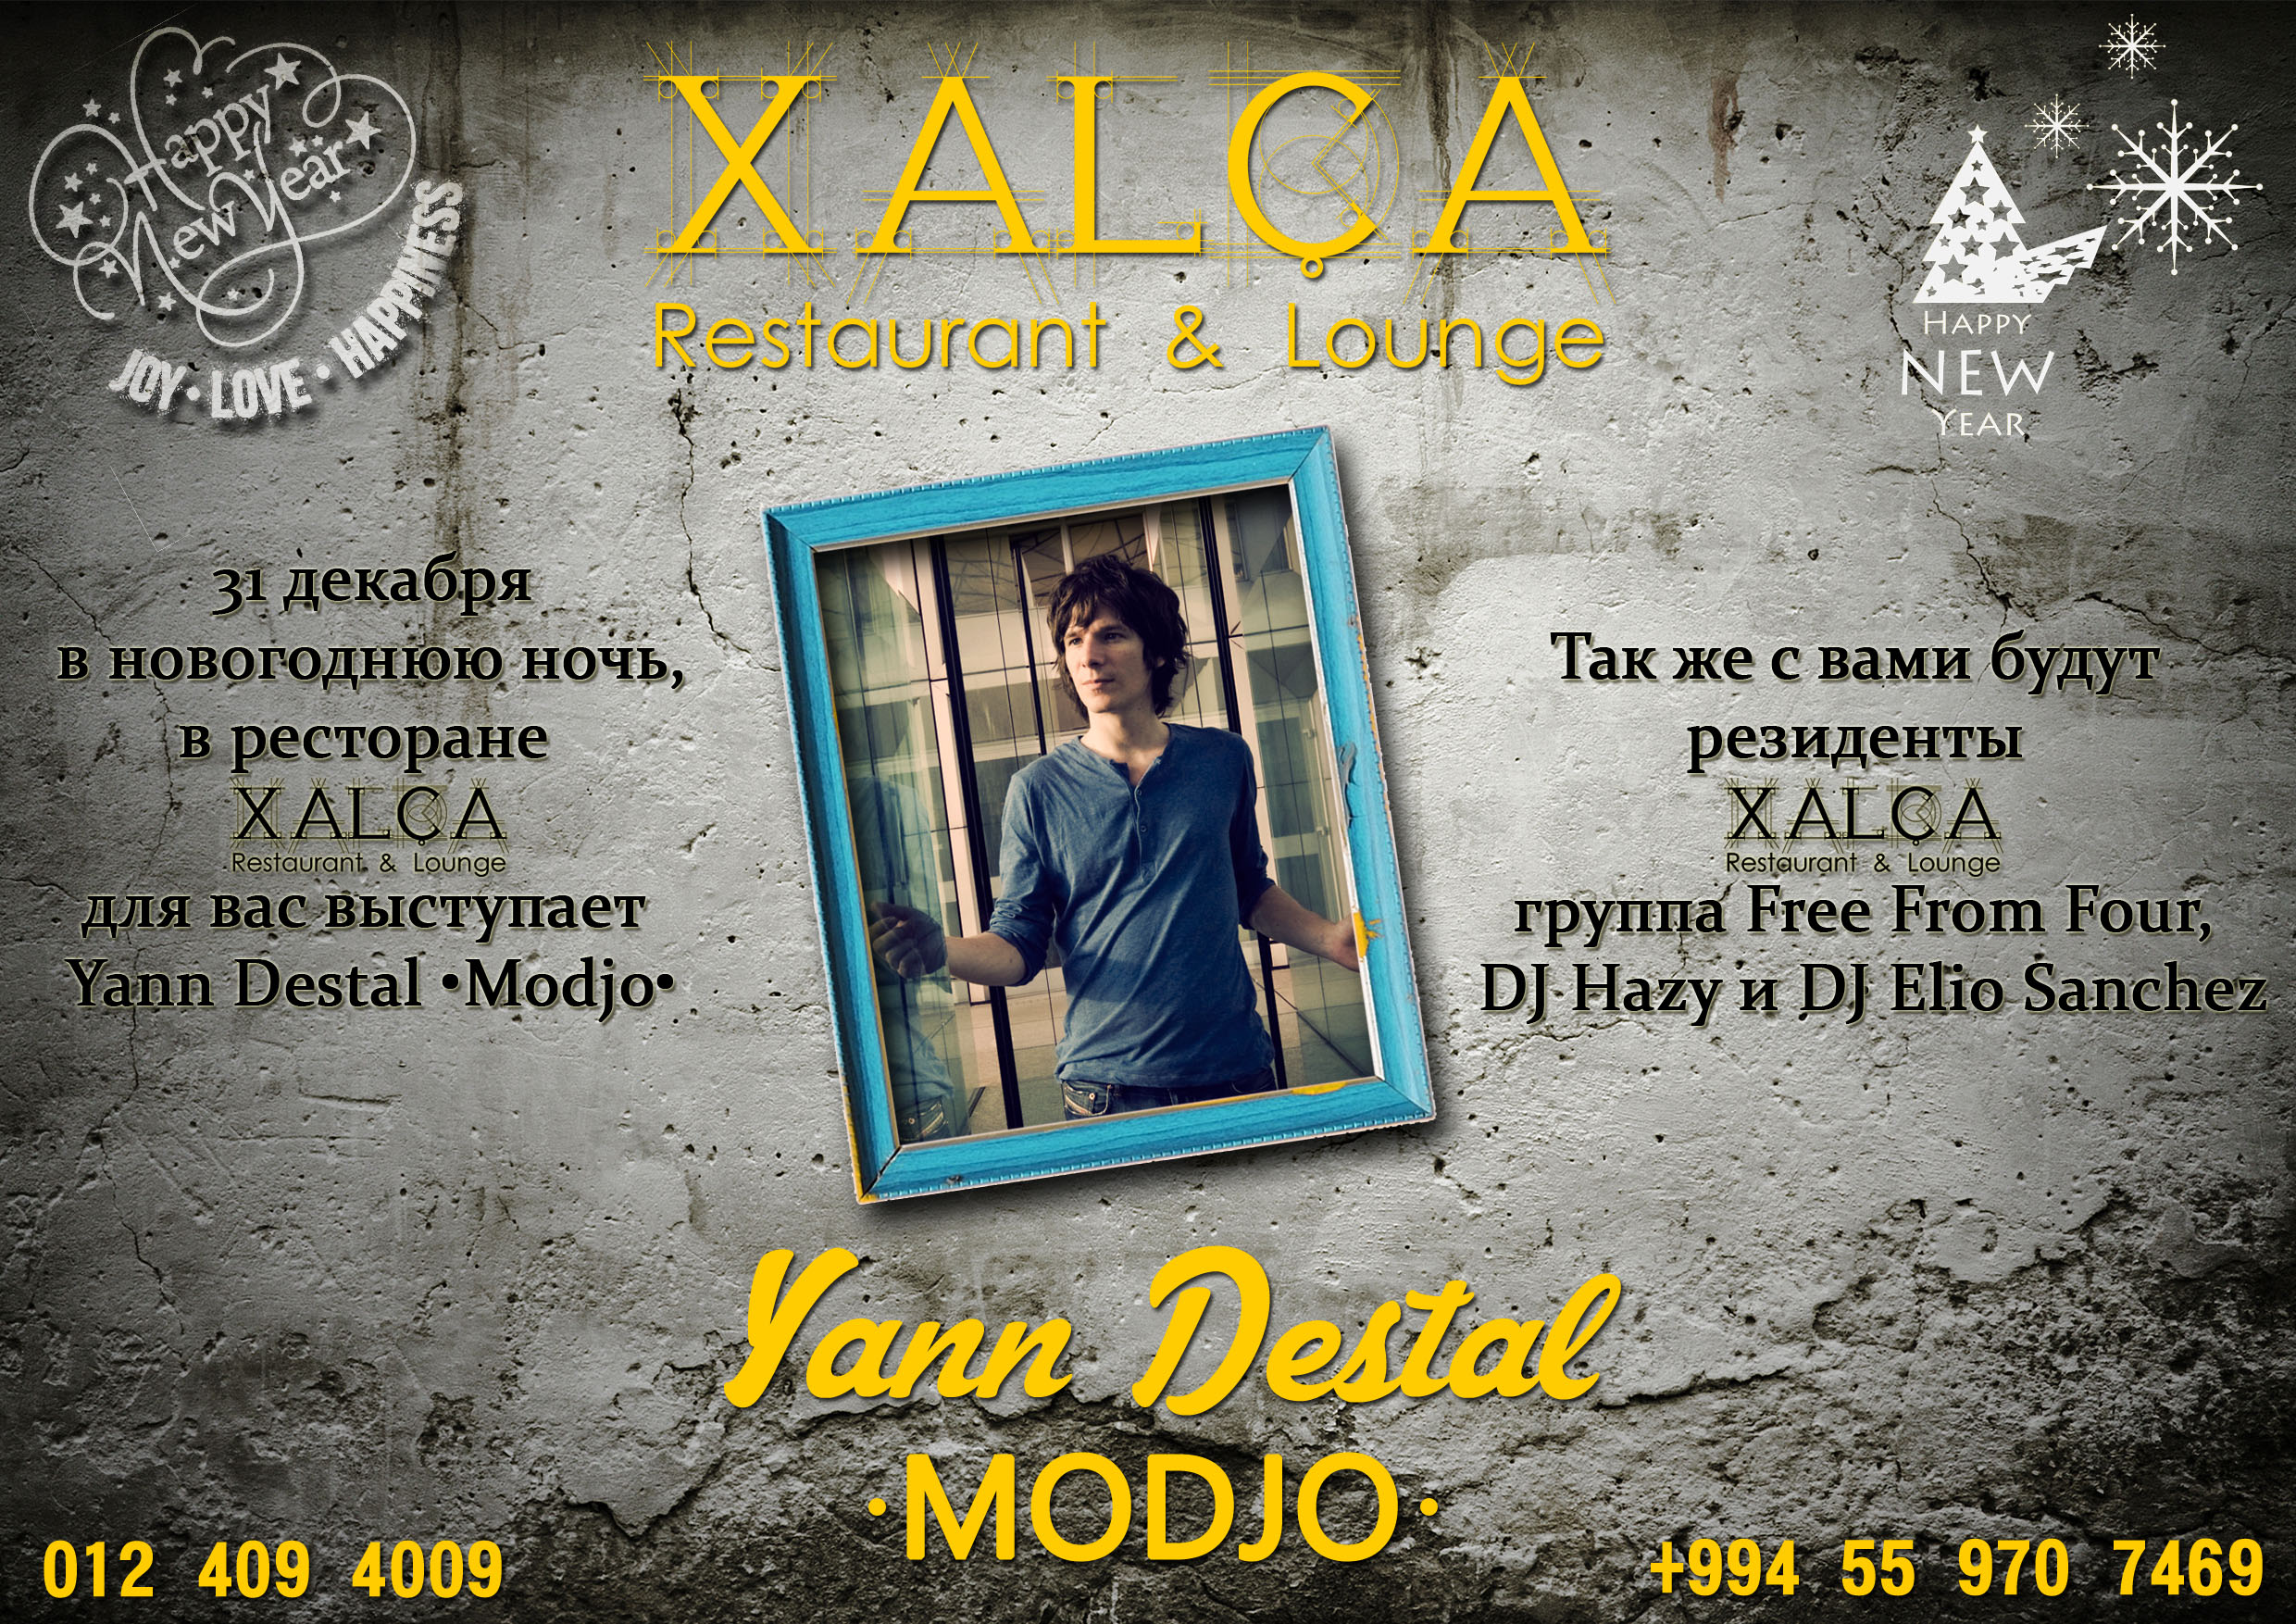 Легендарная группа MODJO выступит в Баку в XALCA Restaurant & Lounge  – ФОТО - ВИДЕО